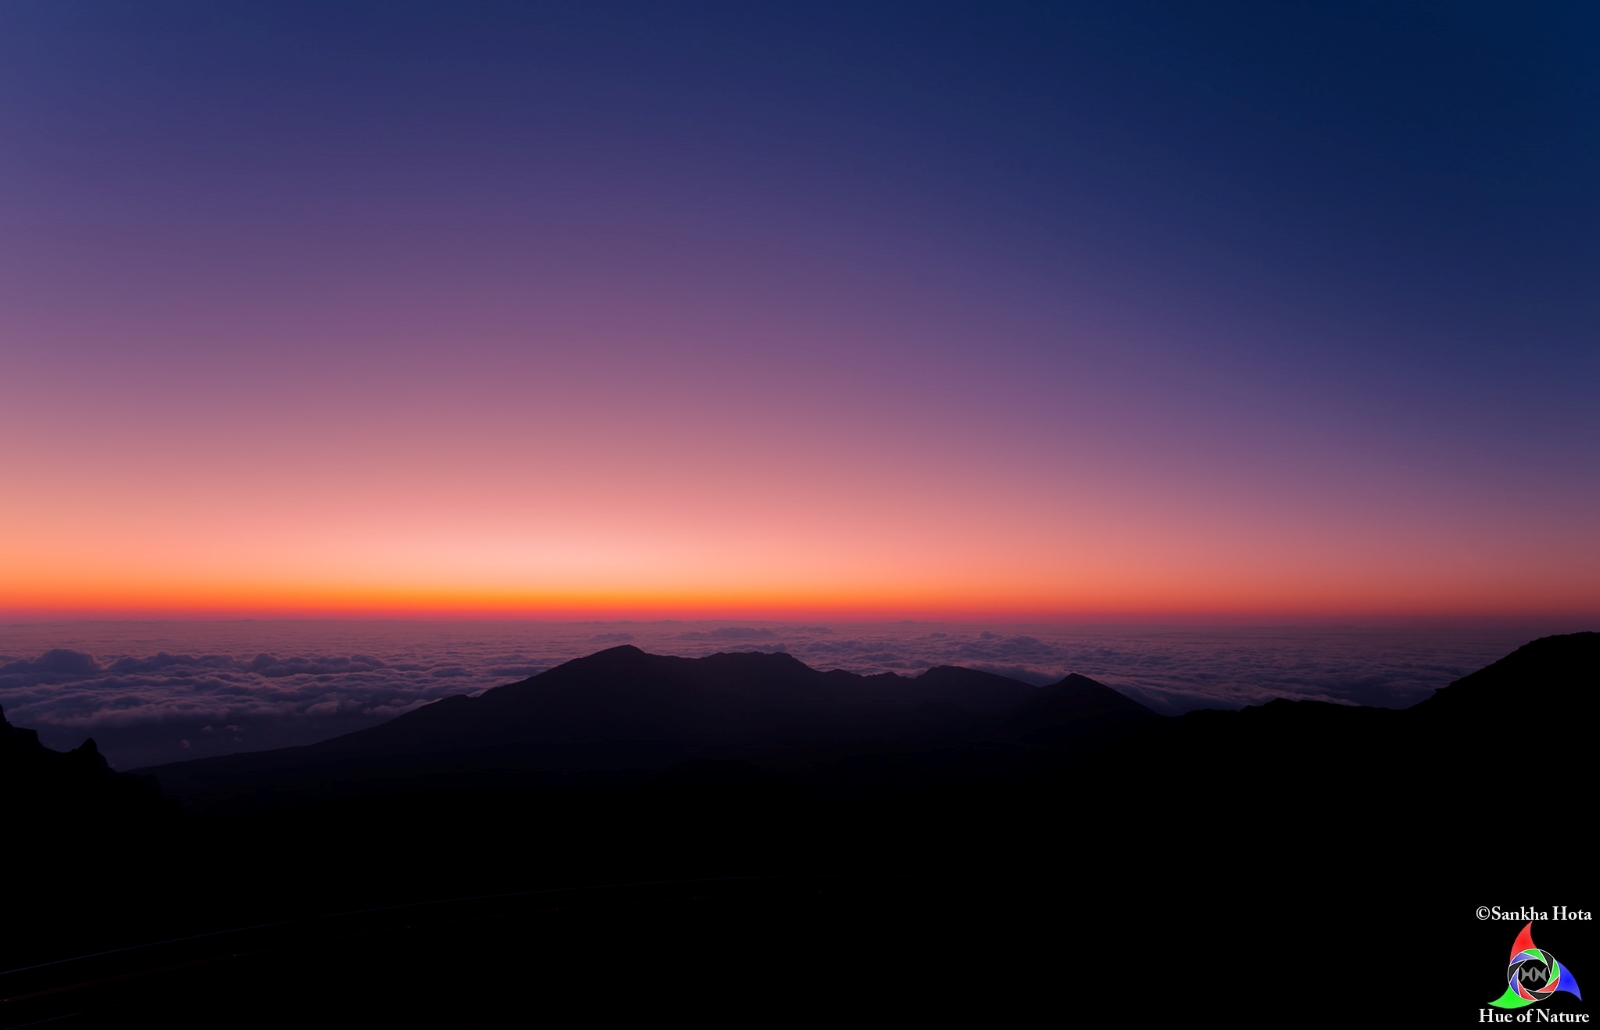 Dawn at Haleakala